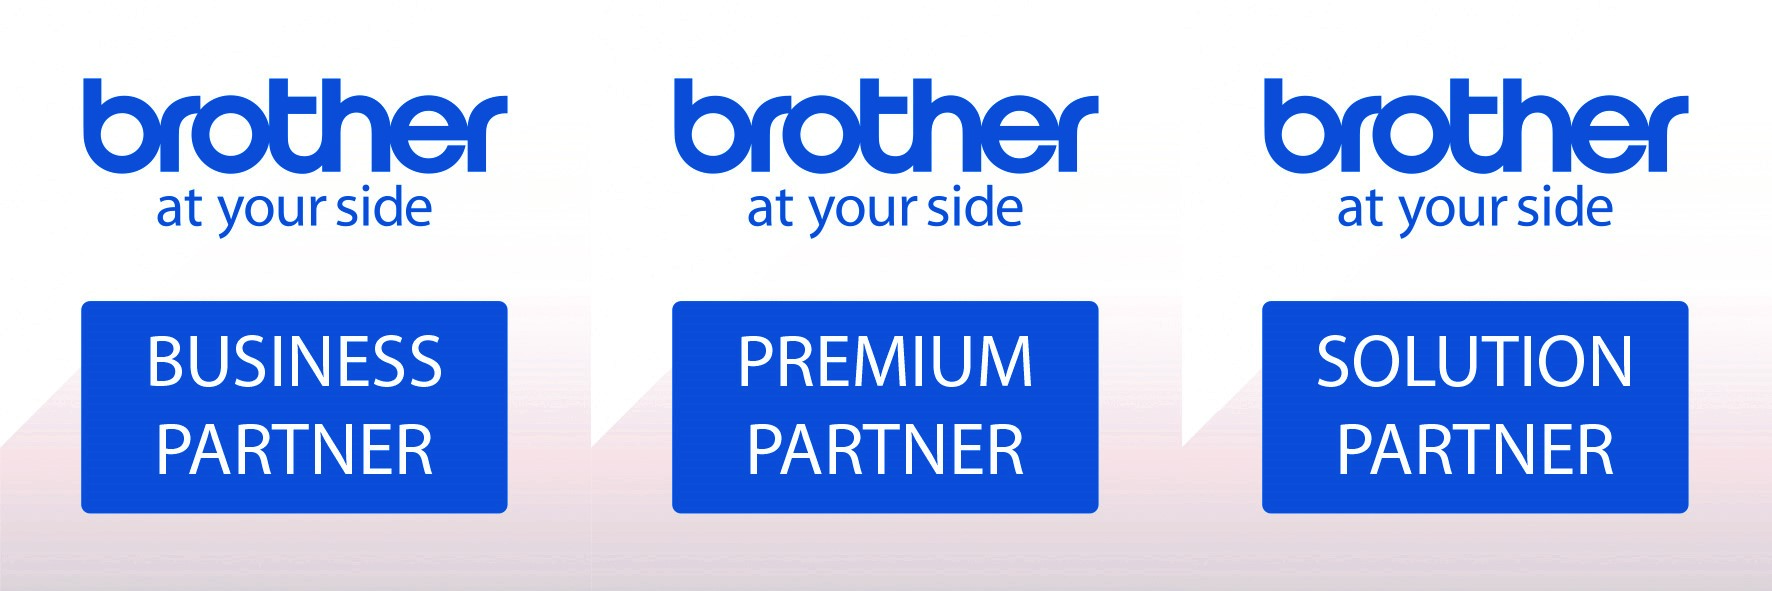 Brother startet neues Partnerprogramm